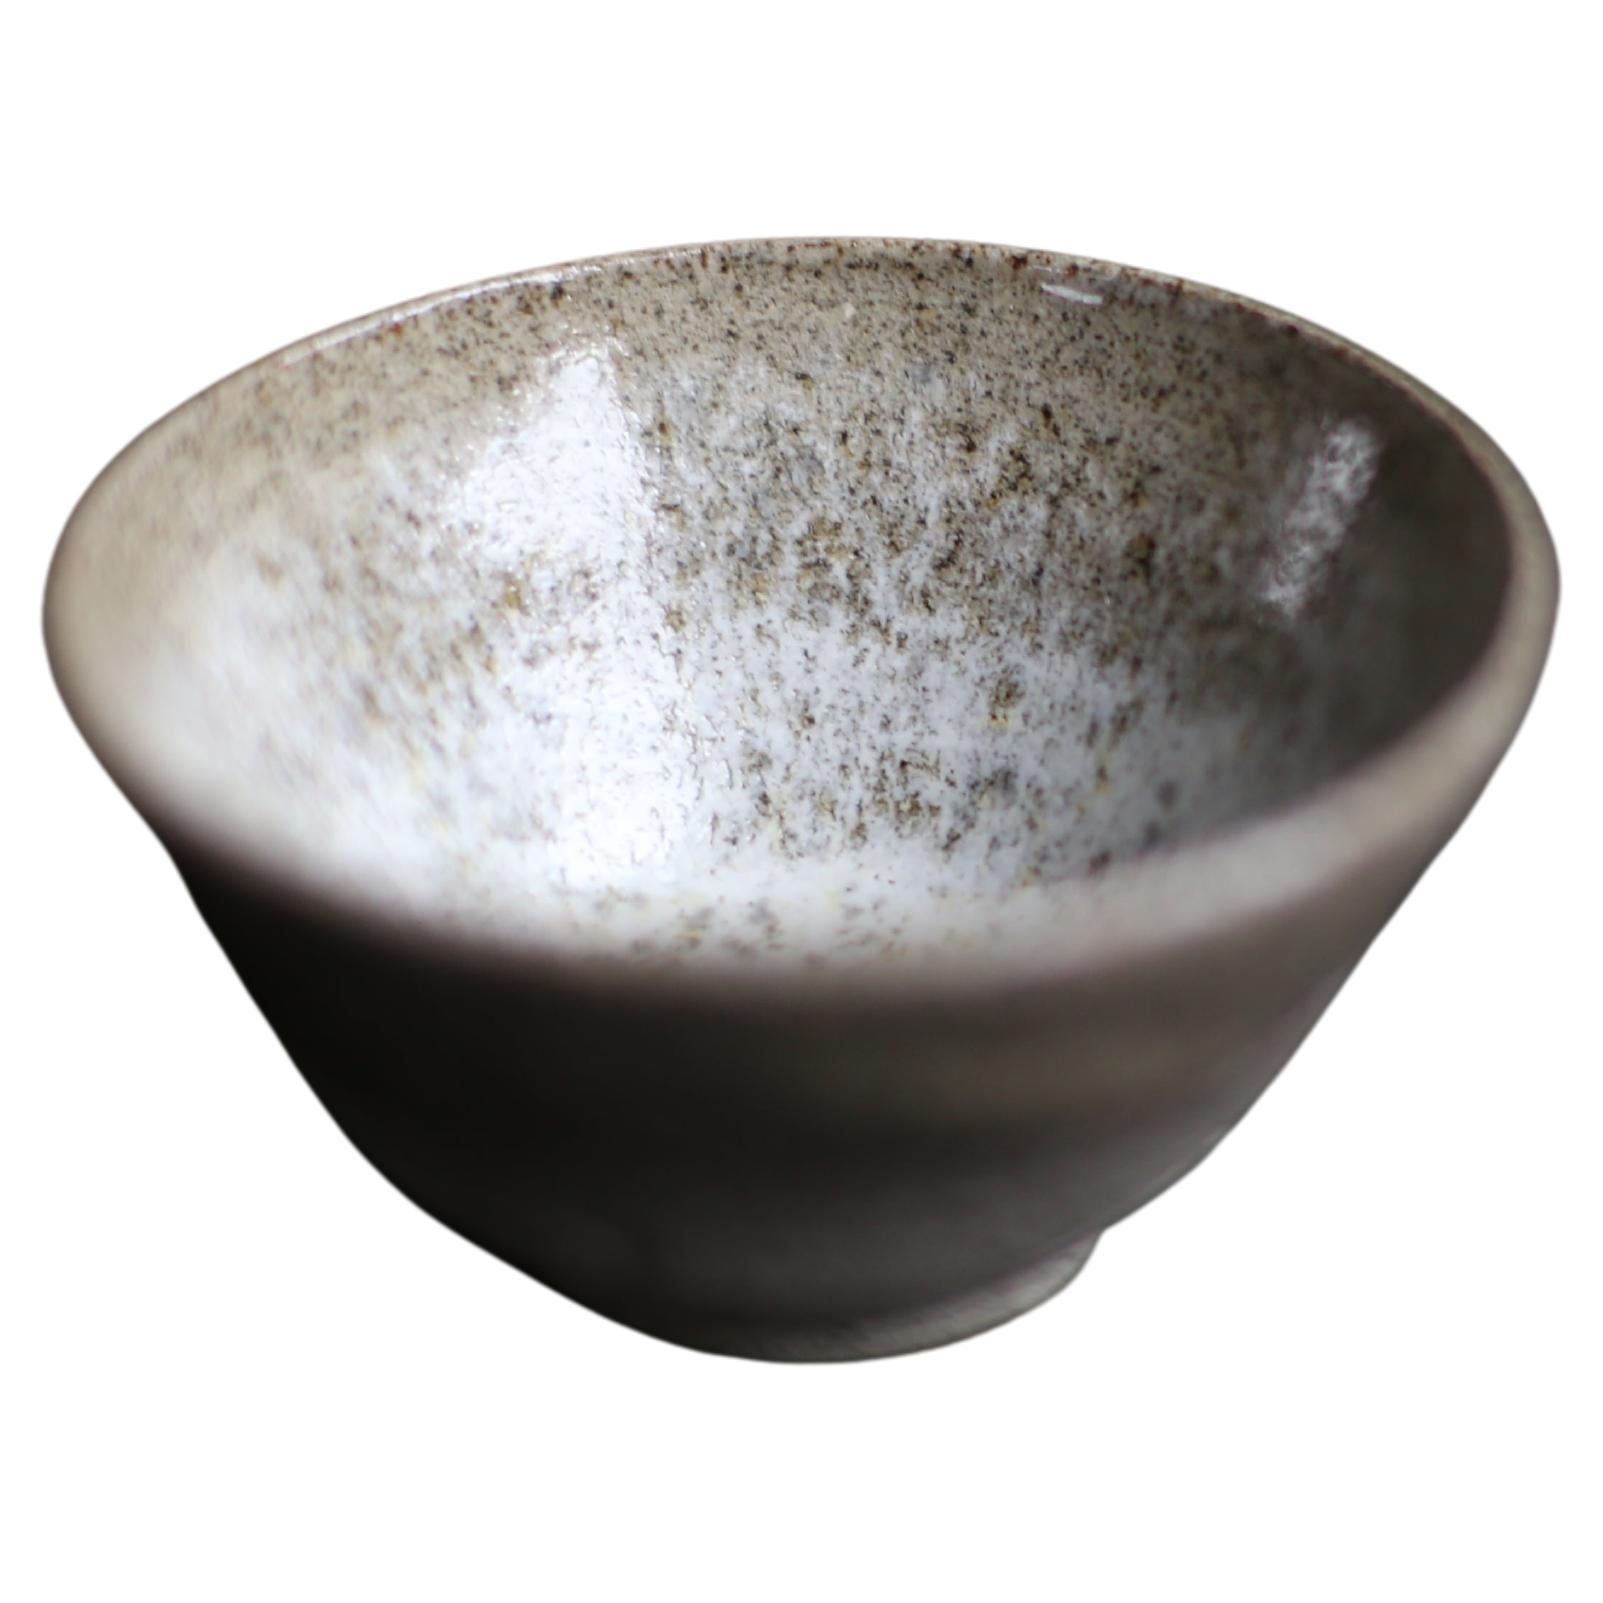 Cup aus grau gesprenkeltem Ton mit weiß gesprenkelter Glasur im Angebot